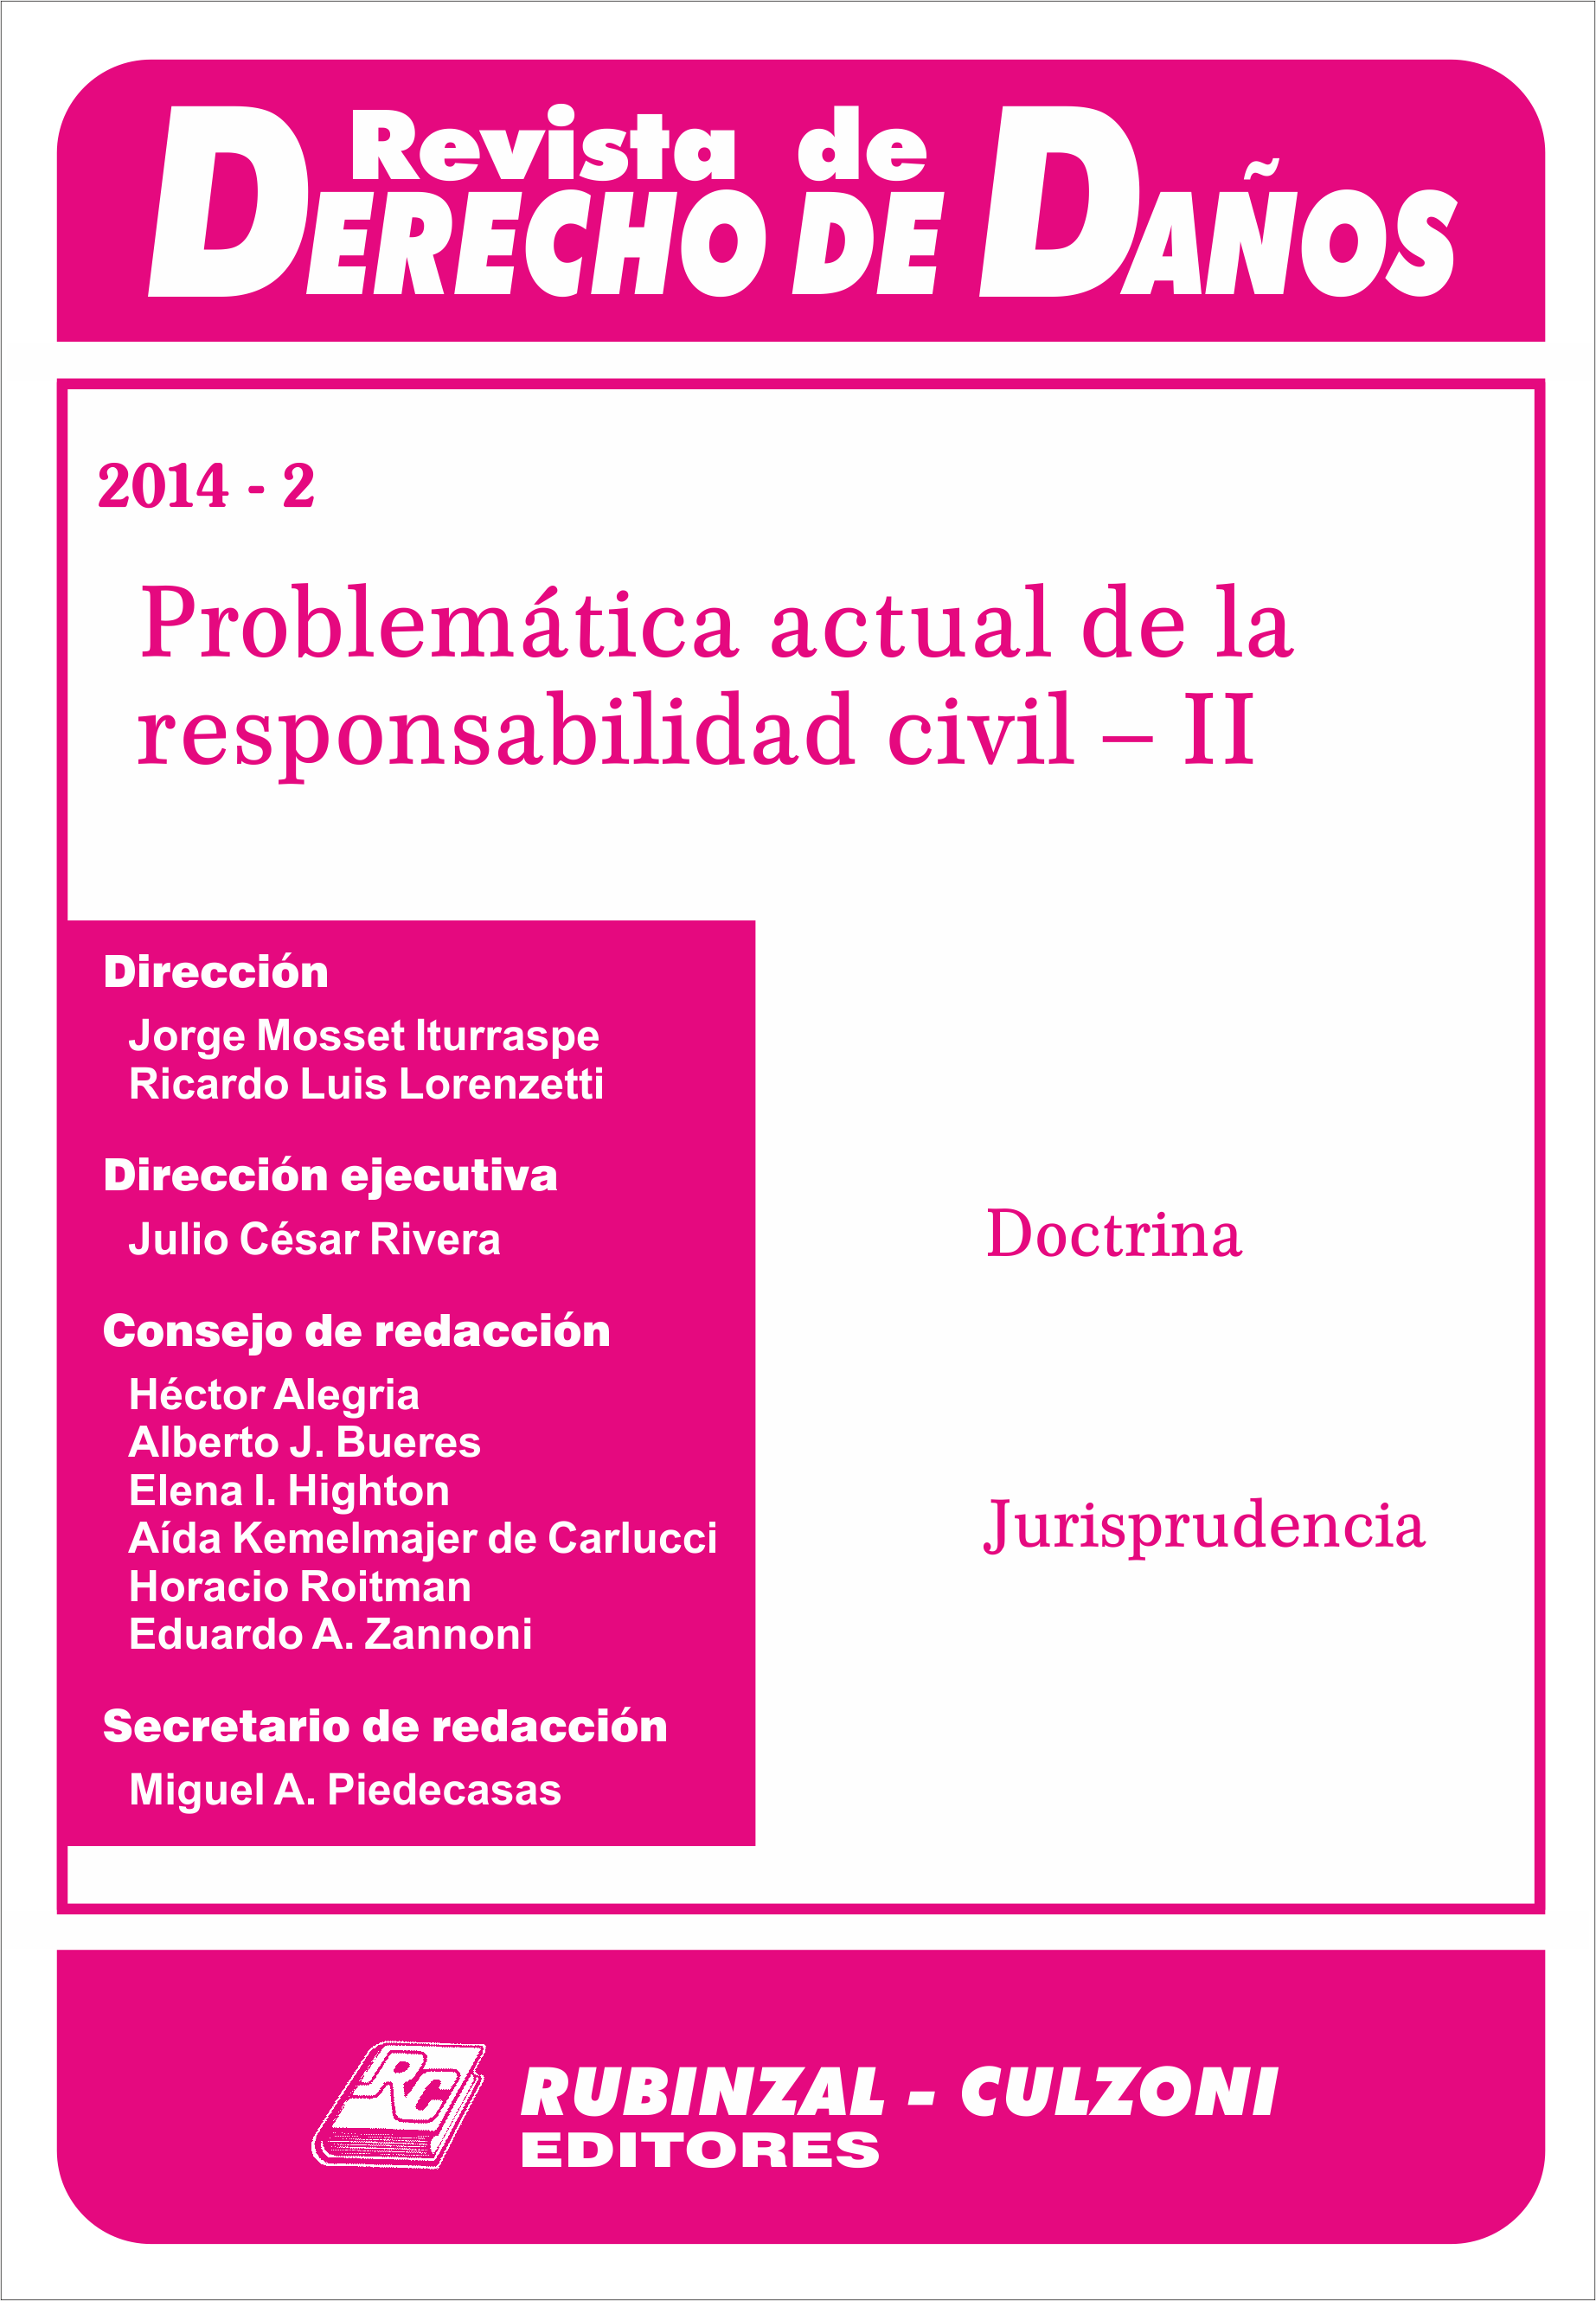 Revista de Derecho de Daños - Problemática actual de la responsabilidad civil - II.